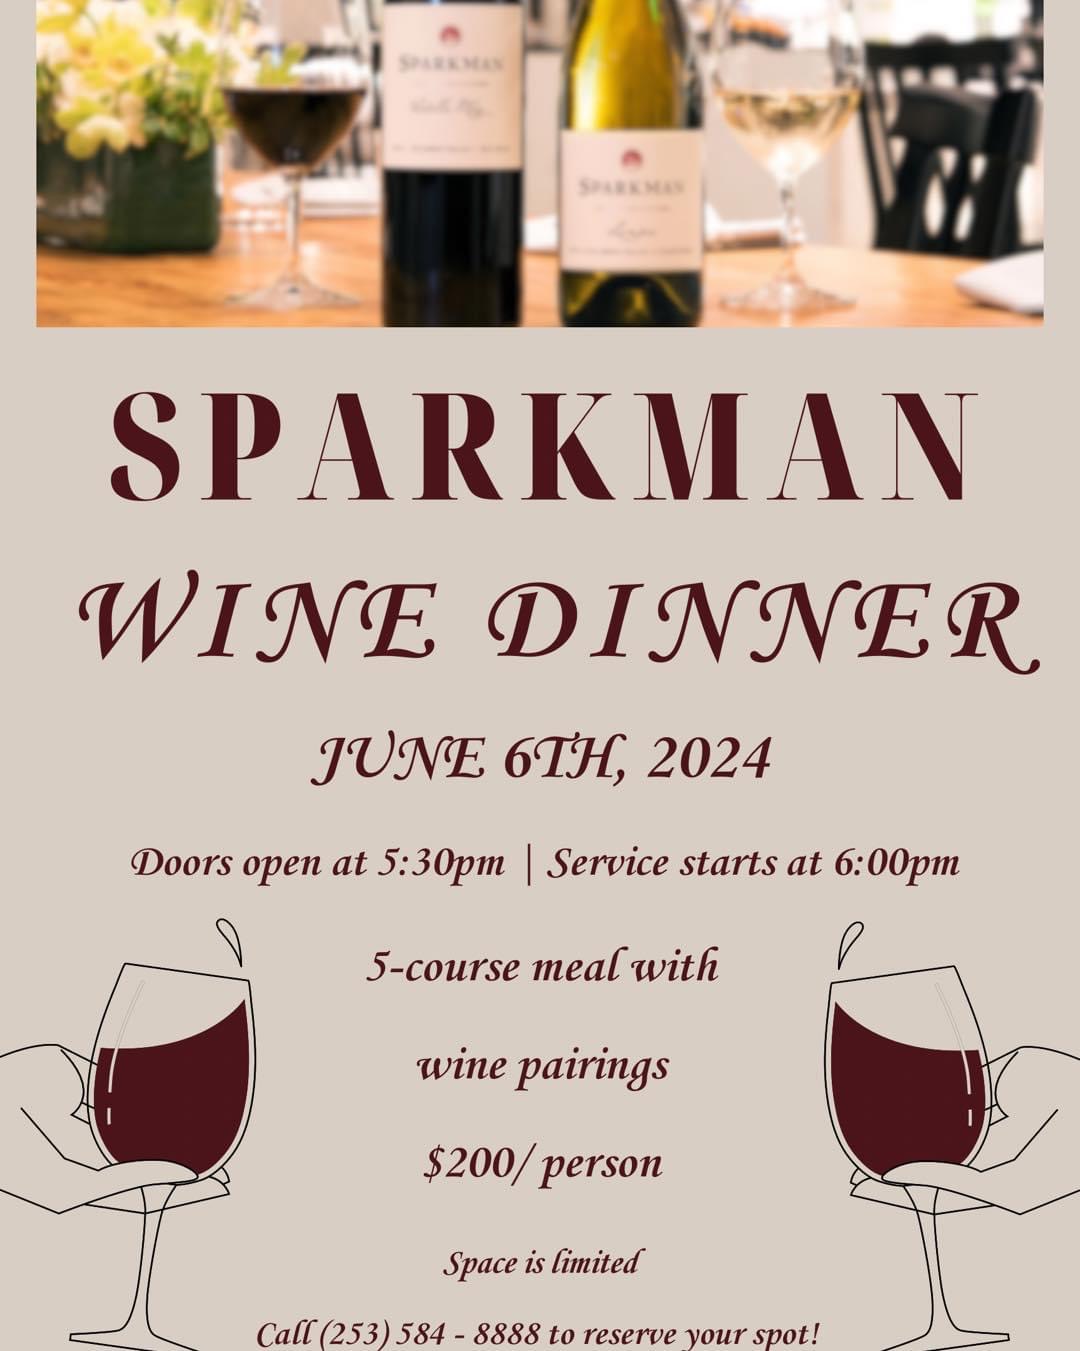 Sparkman Wine Dinner